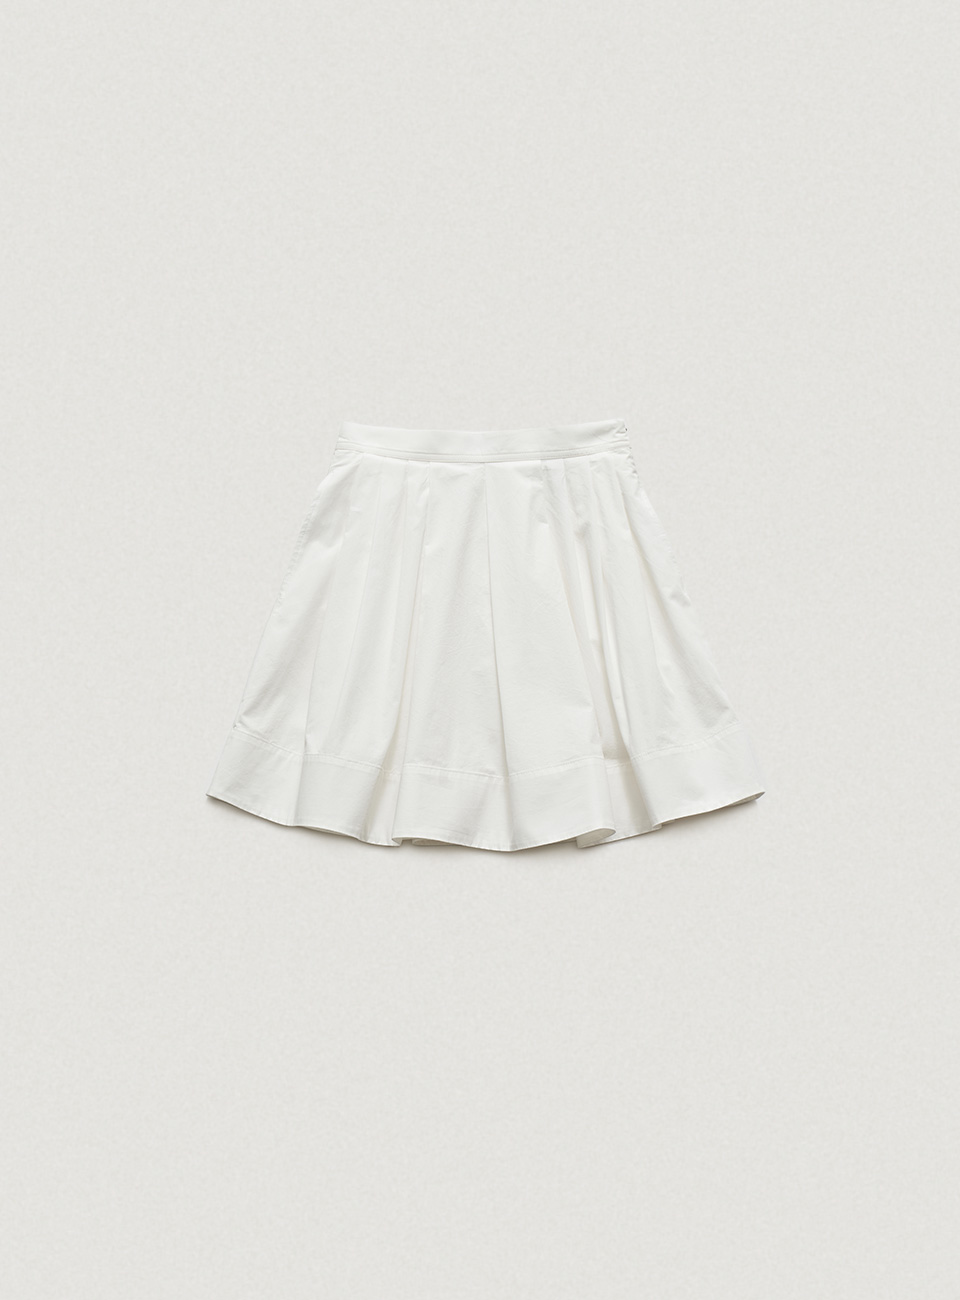 Magnolia Pleated Skirt [6월 초 순차 배송]